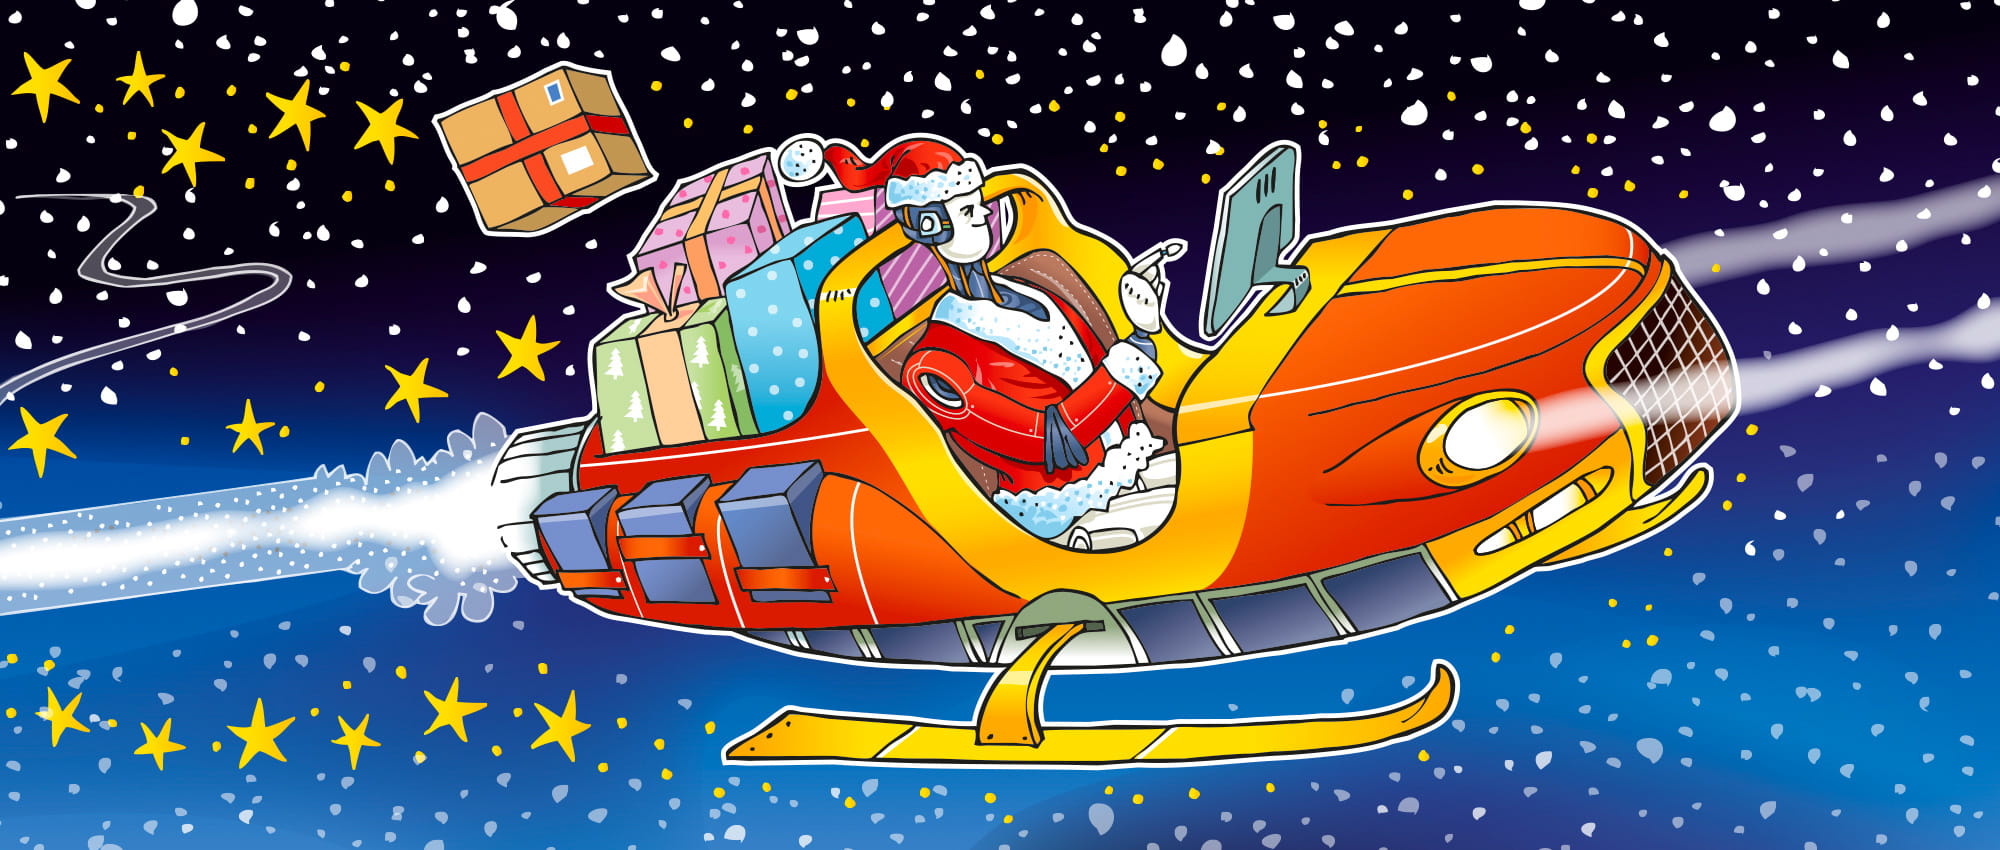 Roboter-Weihnachtsmann, der in einem modernen auto-ähnlichem Schlitten mit Geschenken durch den Sternenhimmel fährt und auf einen am Schlitten befestigtem Bildschirm klickt.